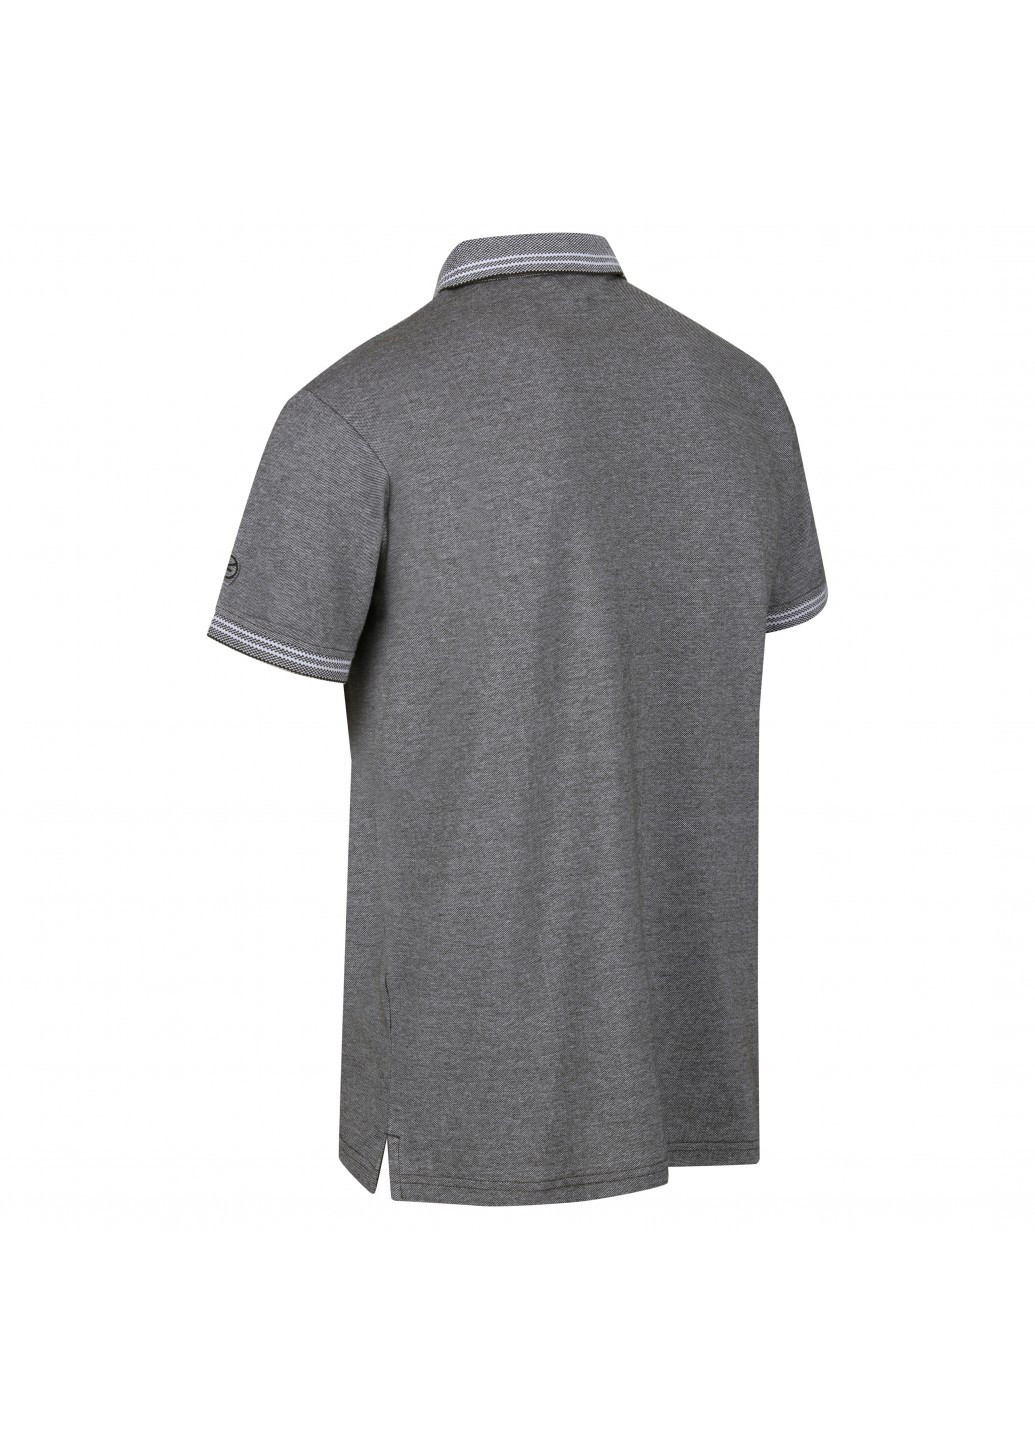 Оливковая (хаки) футболка-поло для мужчин Regatta меланжевая